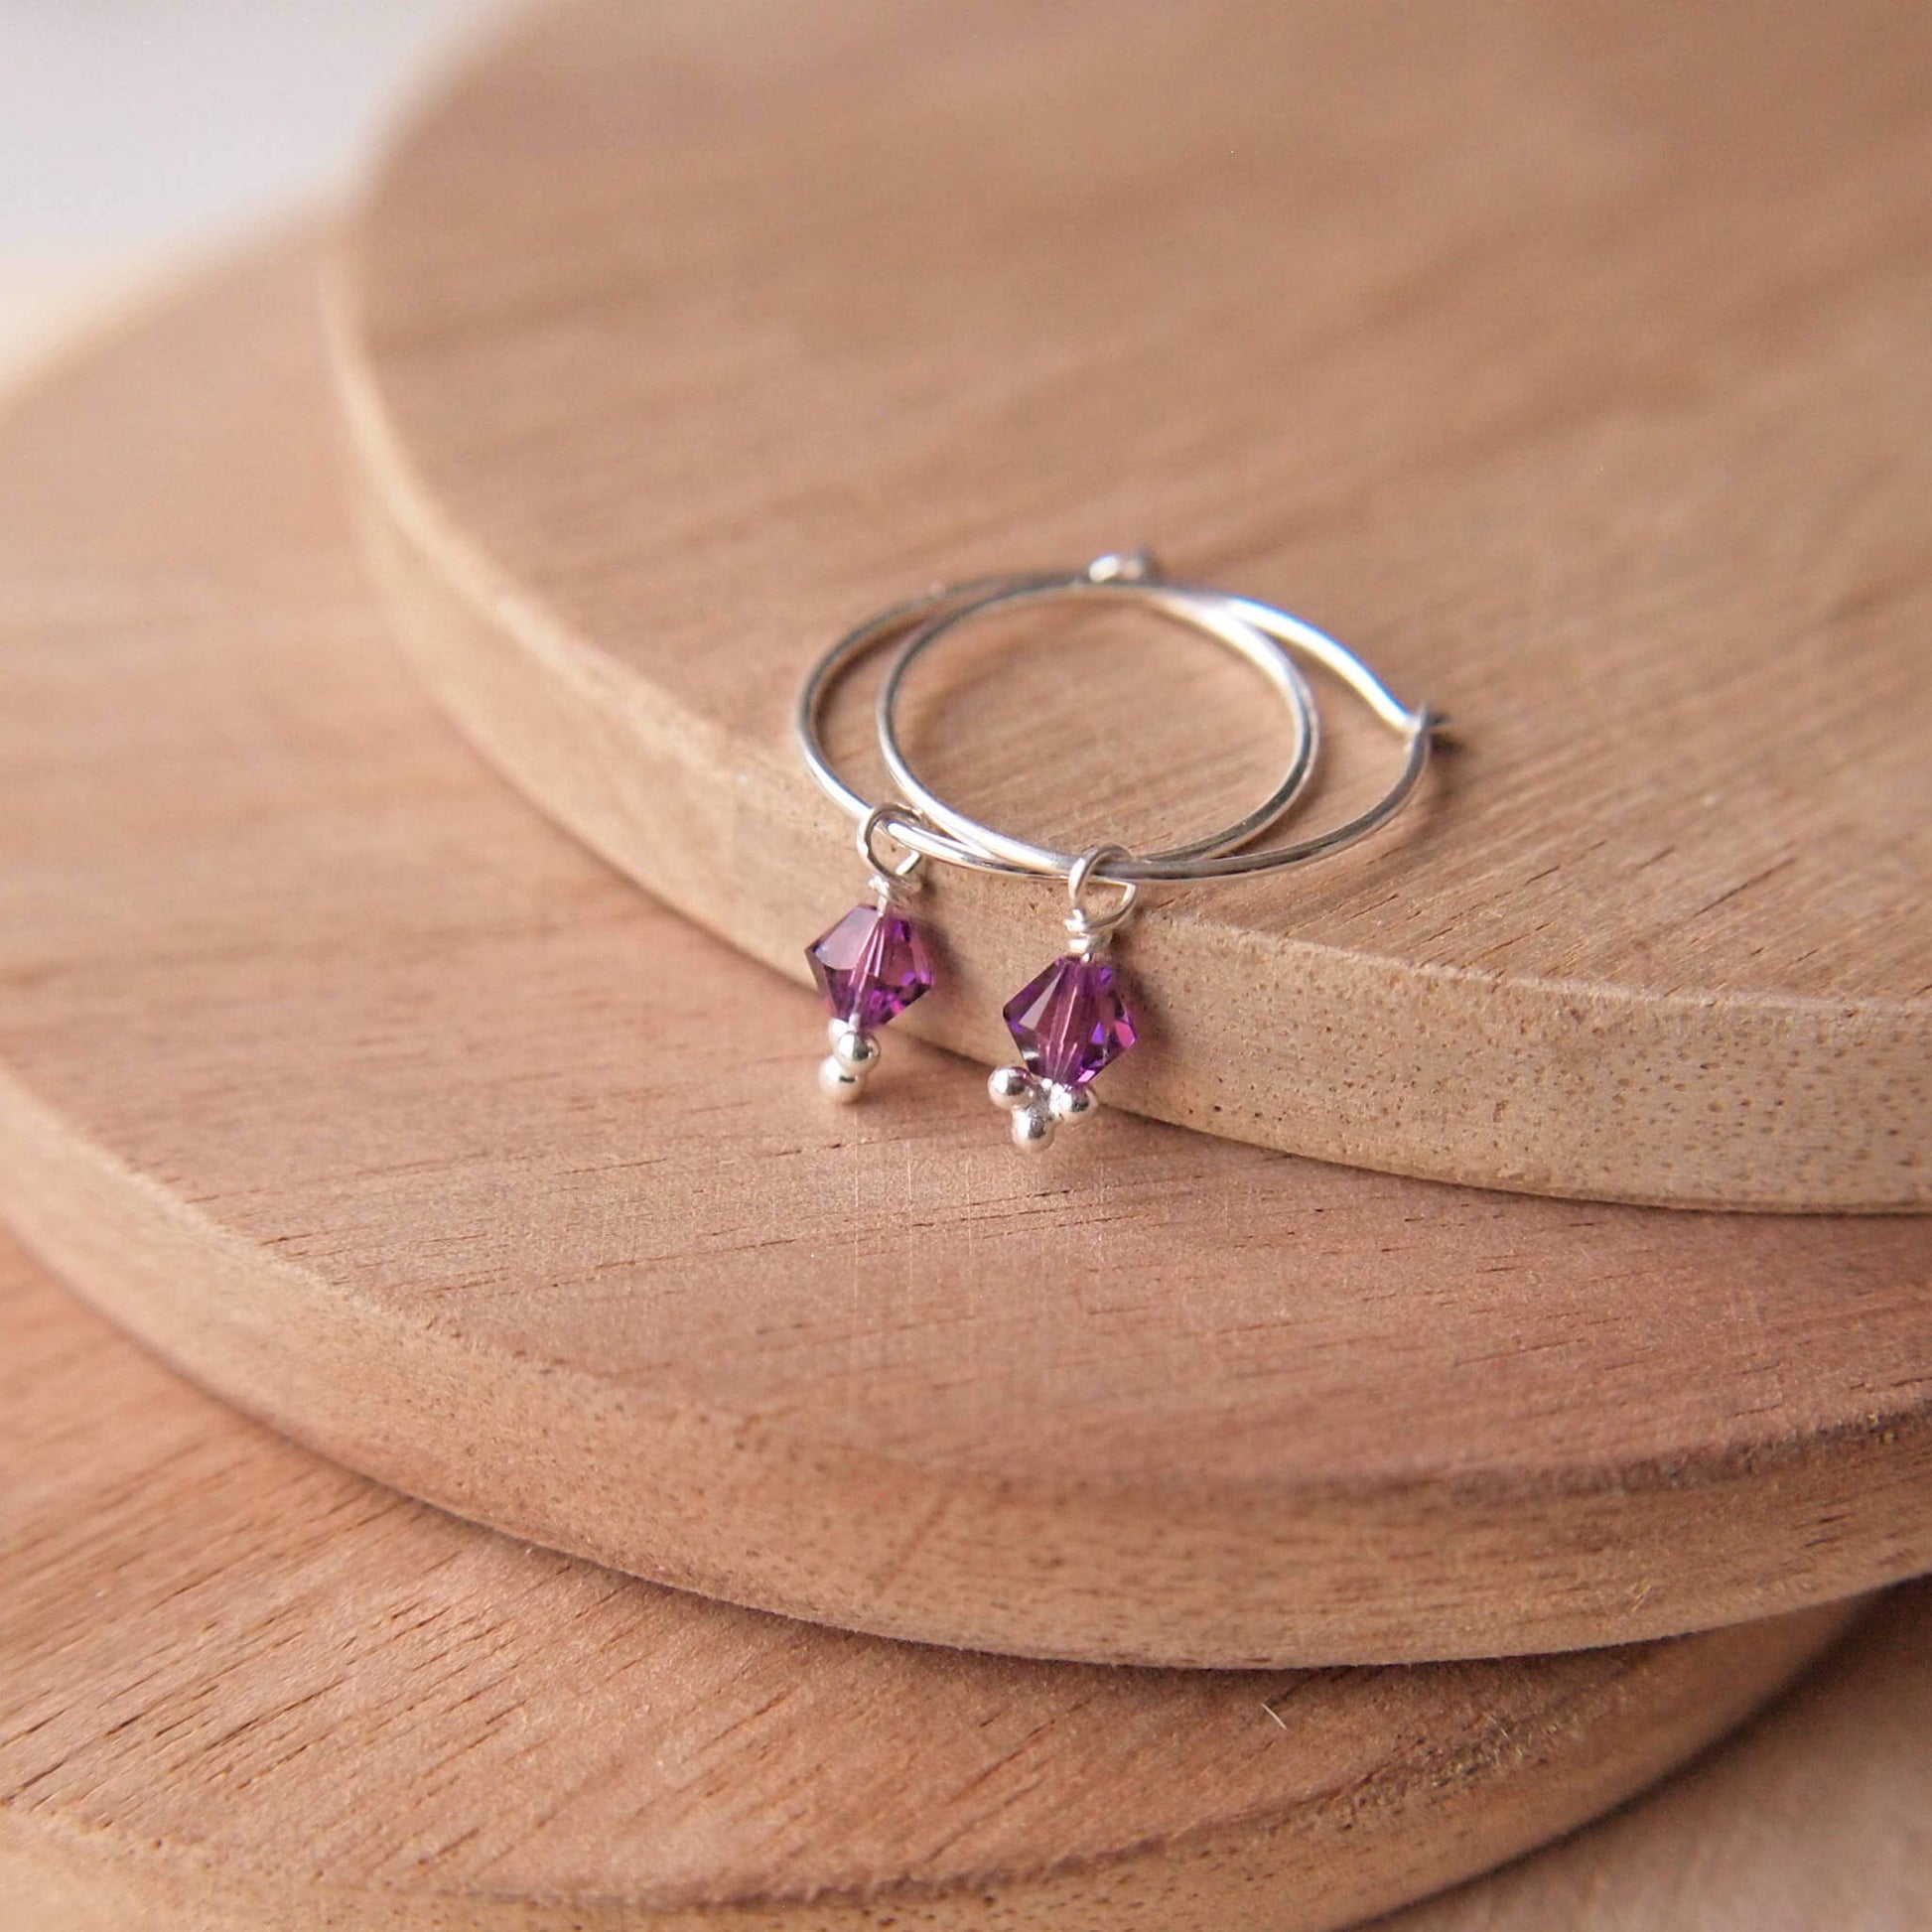 Amethyst purple crystal earrings on a sterling silver hoop